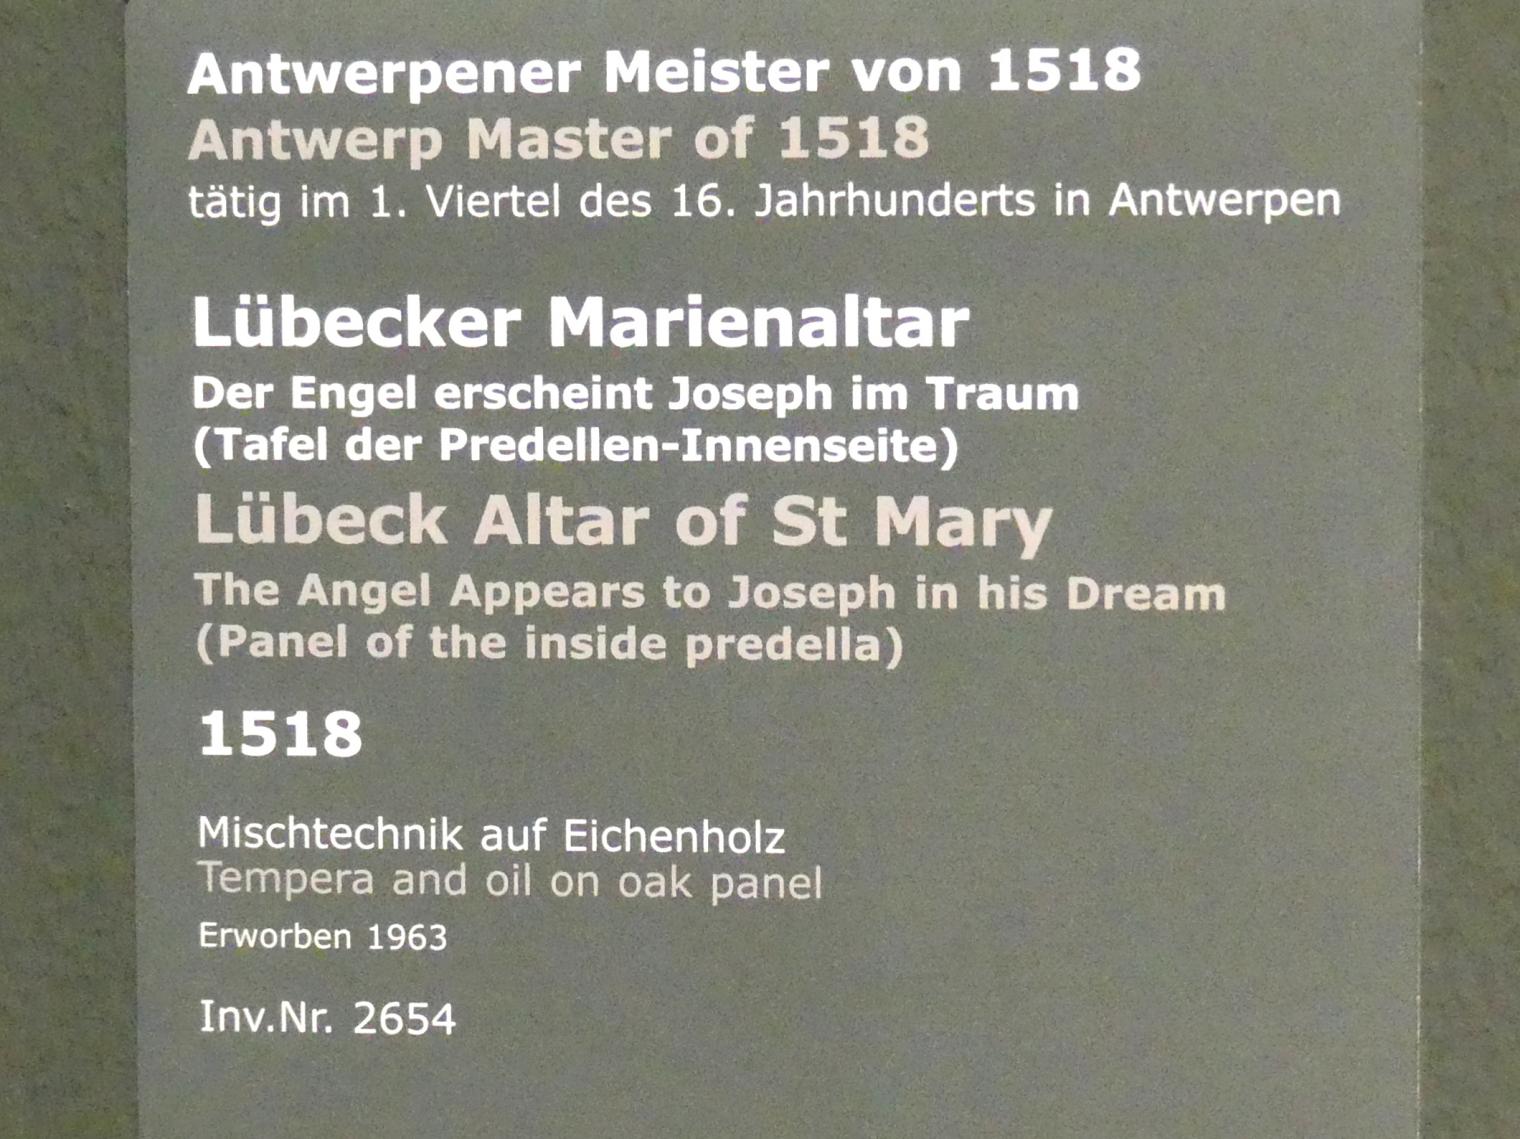 Meister von 1518 (1518), Lübecker Marienaltar - Der Engel erscheint Joseph im Traum, Stuttgart, Staatsgalerie, Niederländische Malerei 1, 1518, Bild 2/2